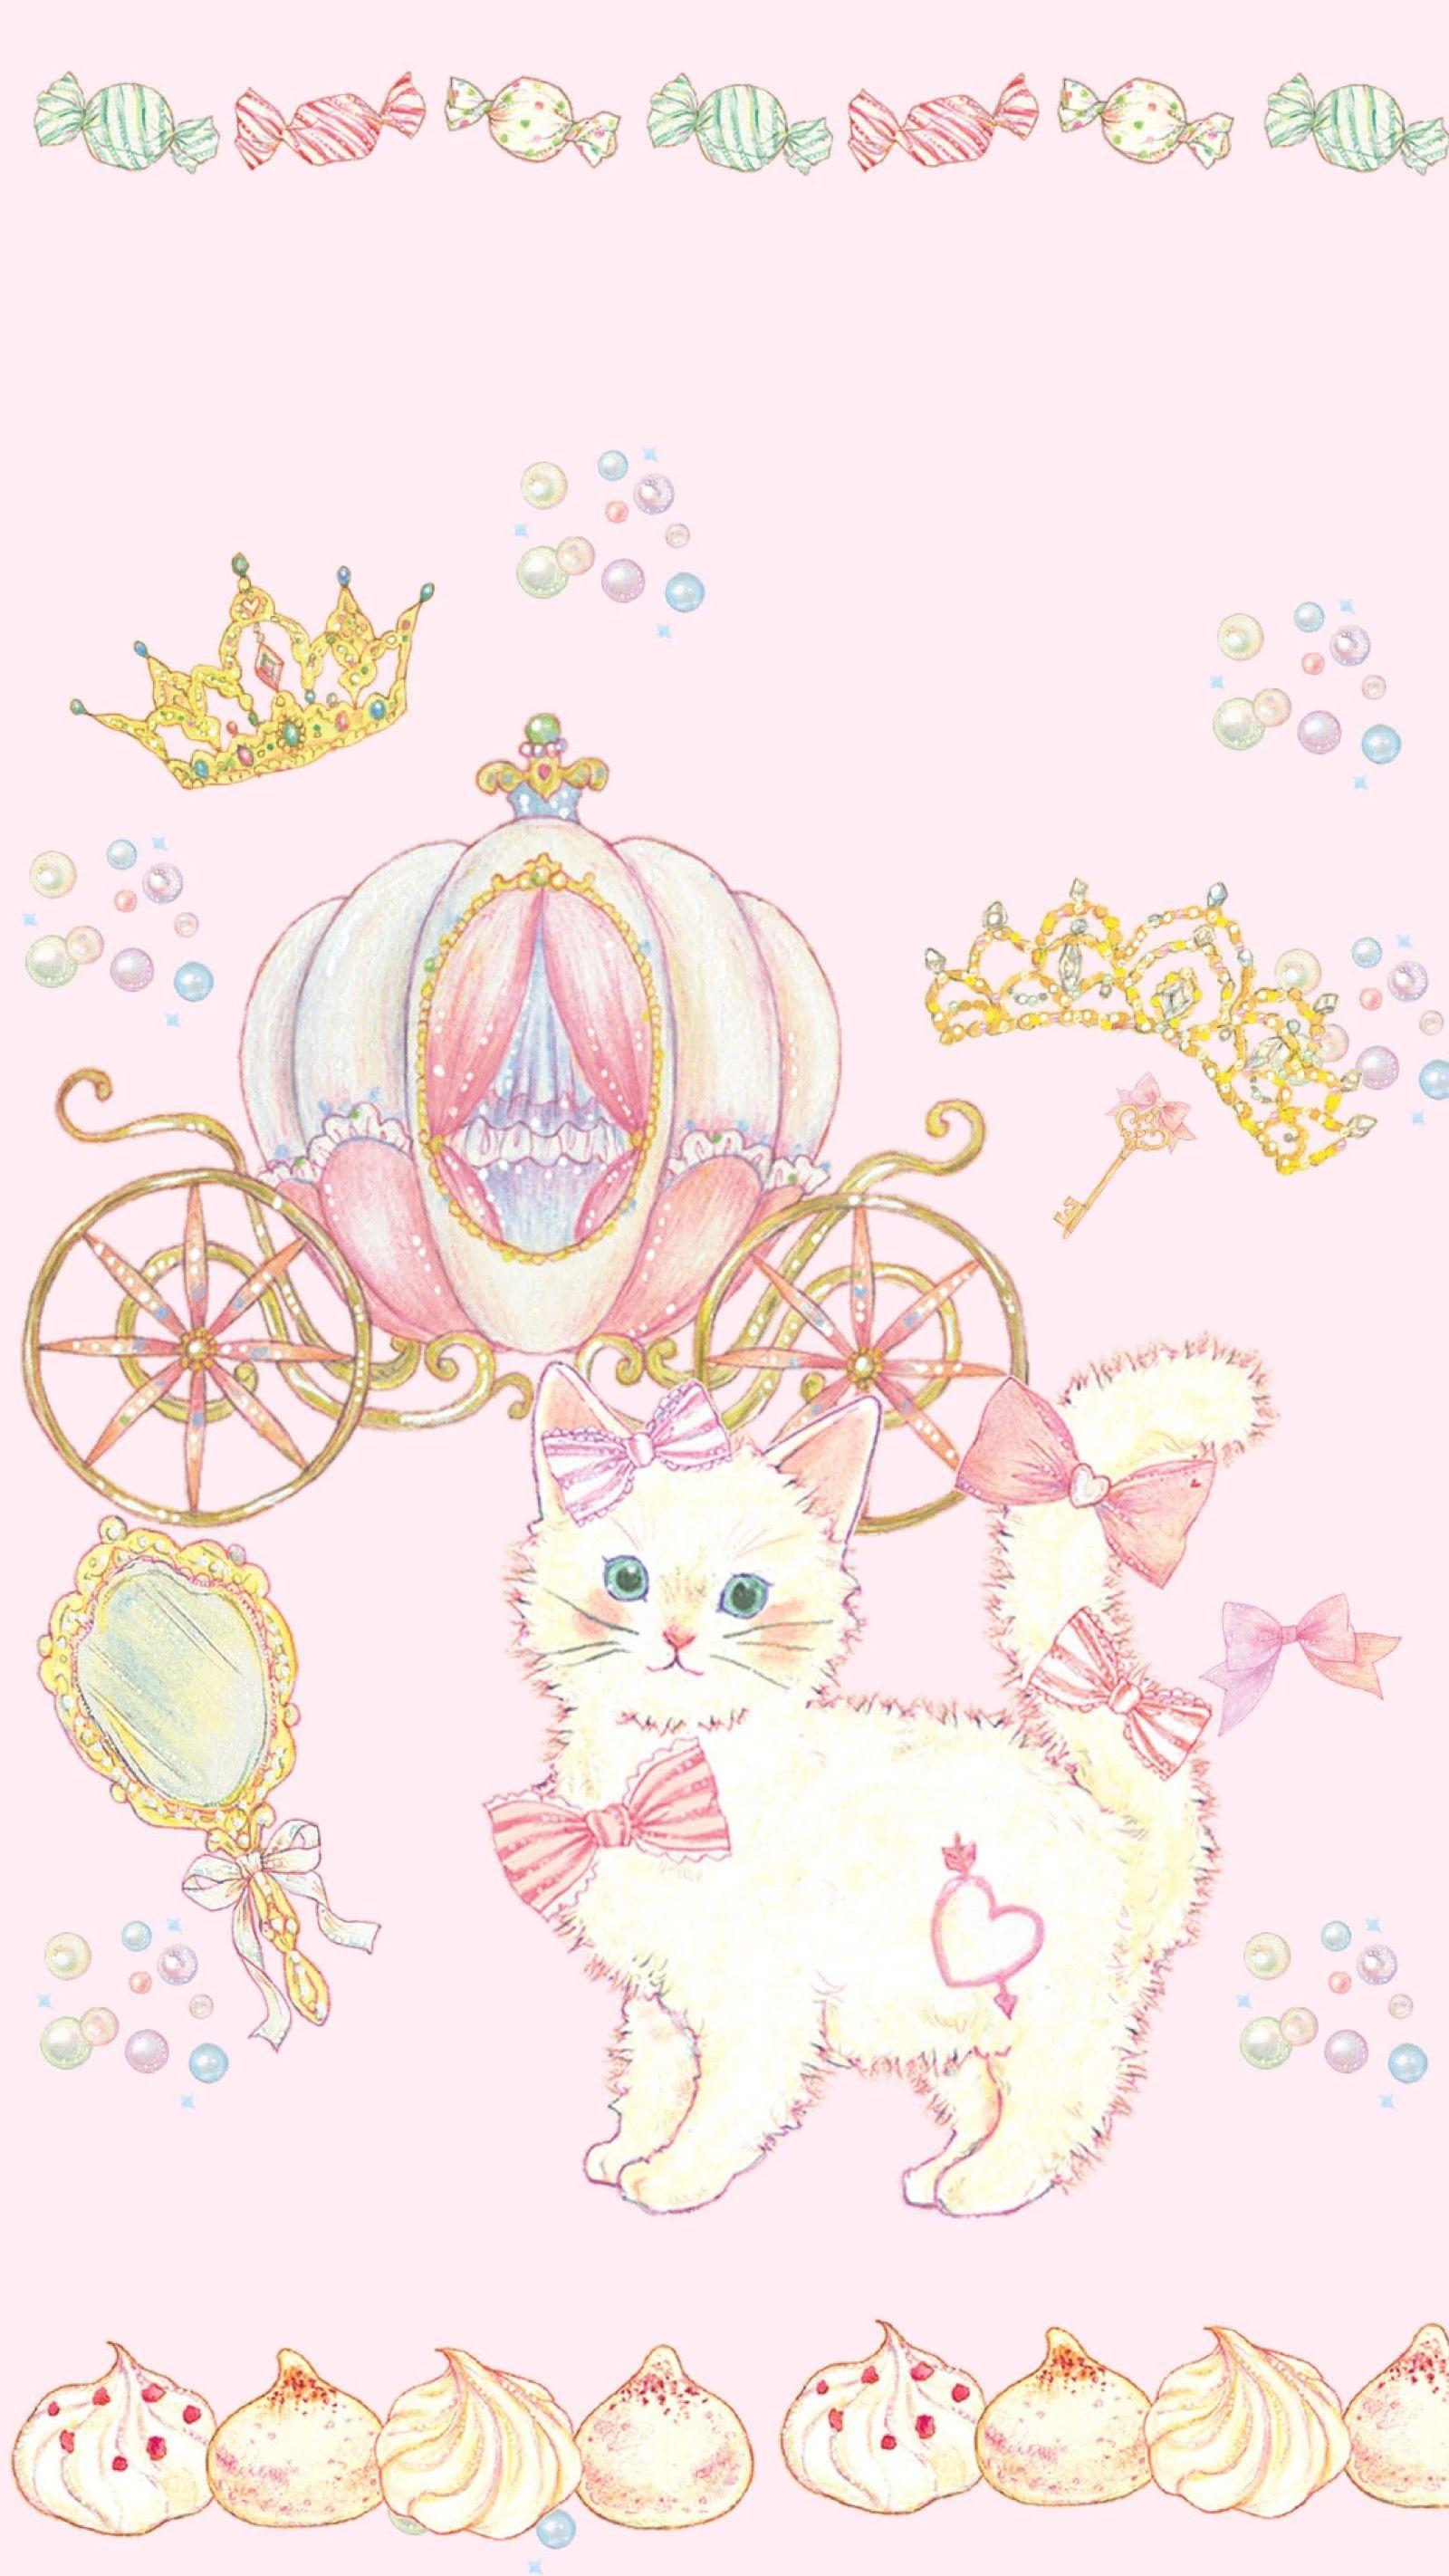 Princess kitten. wallpaper♡. Kawaii wallpaper, Cute wallpaper